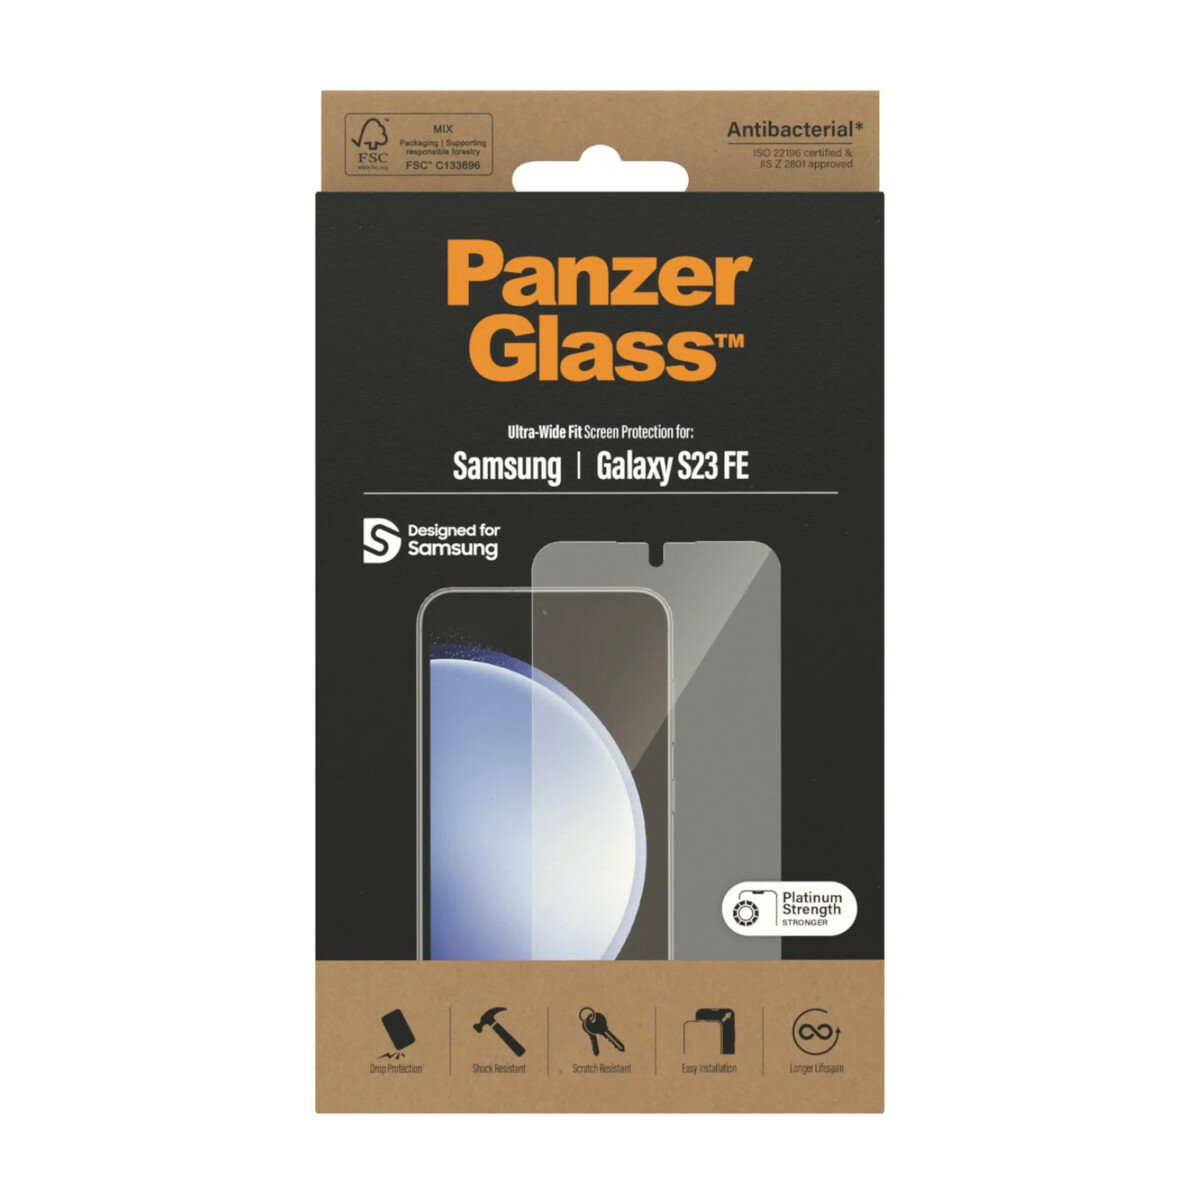 Szkło ochronne PanzerGlass Ultra-Wide Fit Samsung Galaxy S23 FE widok na opakowanie szkła hartowanego